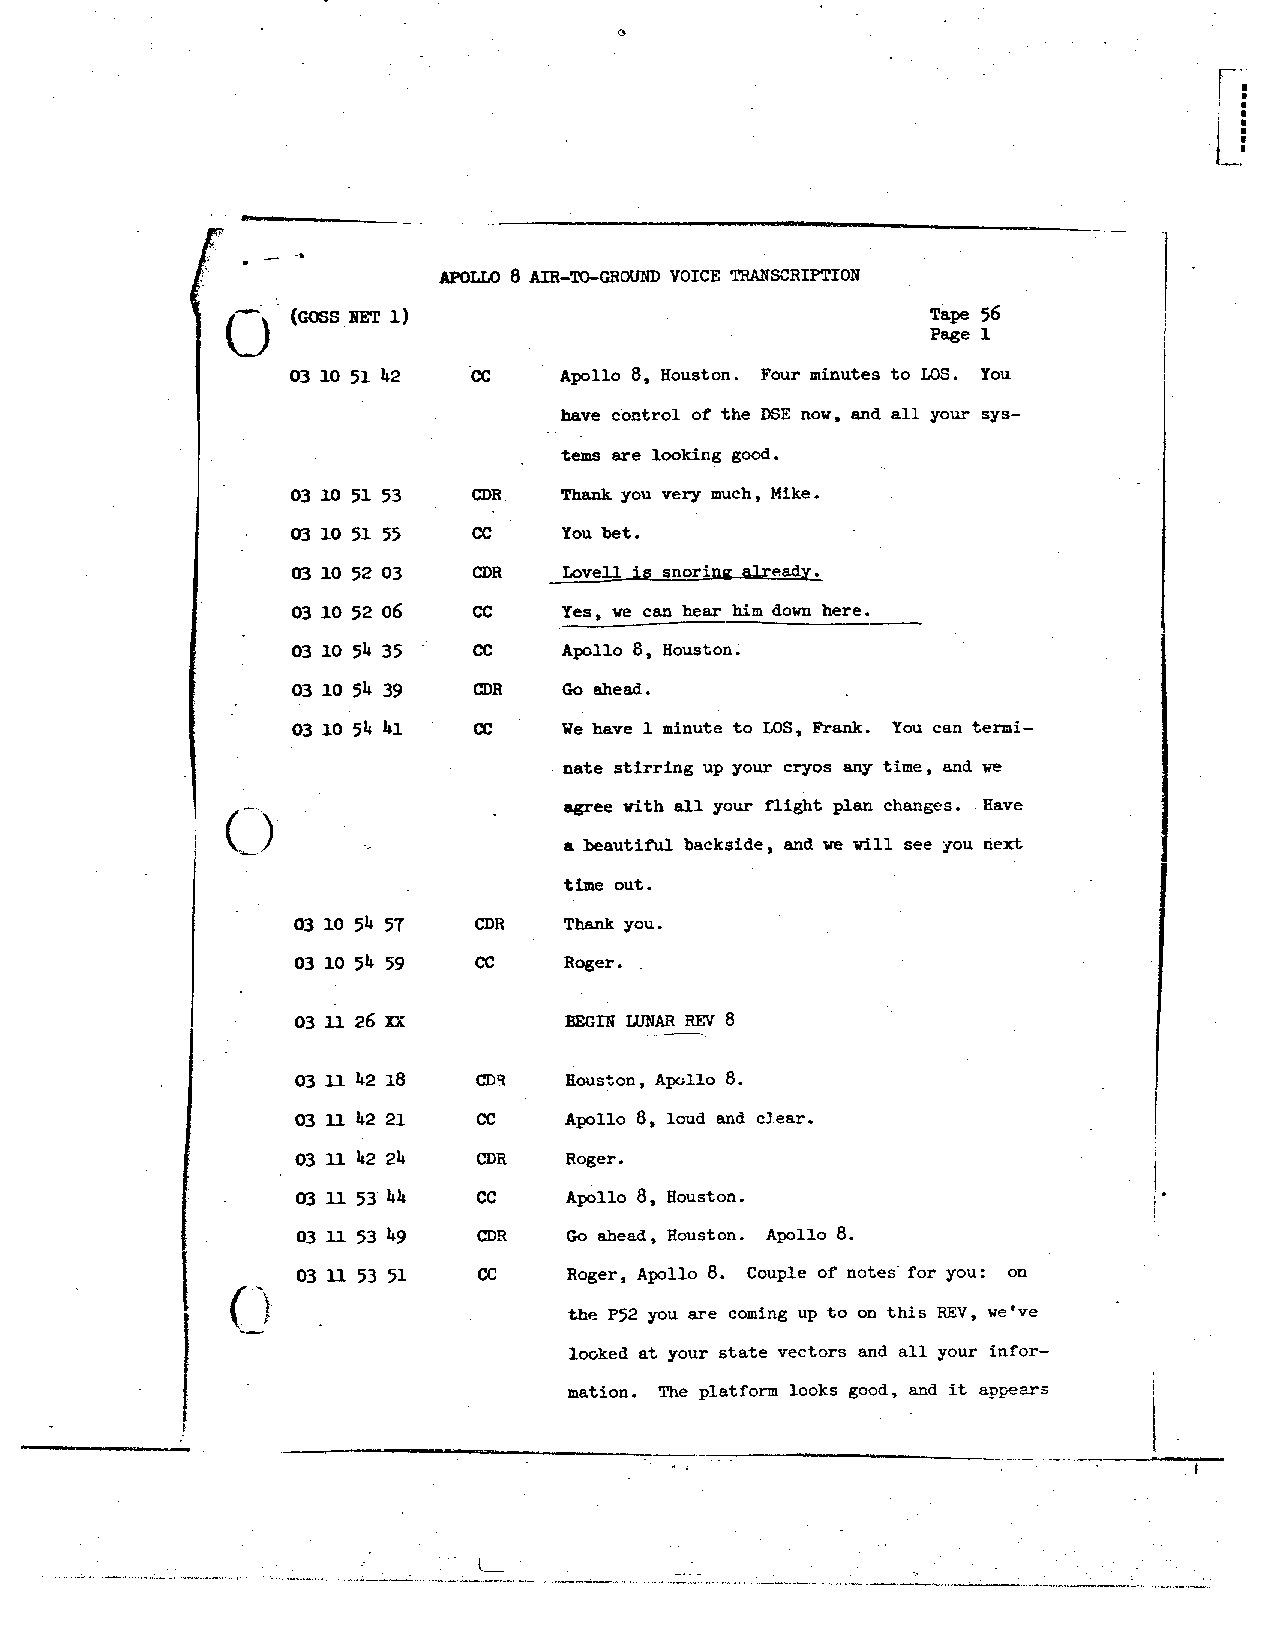 Page 445 of Apollo 8’s original transcript